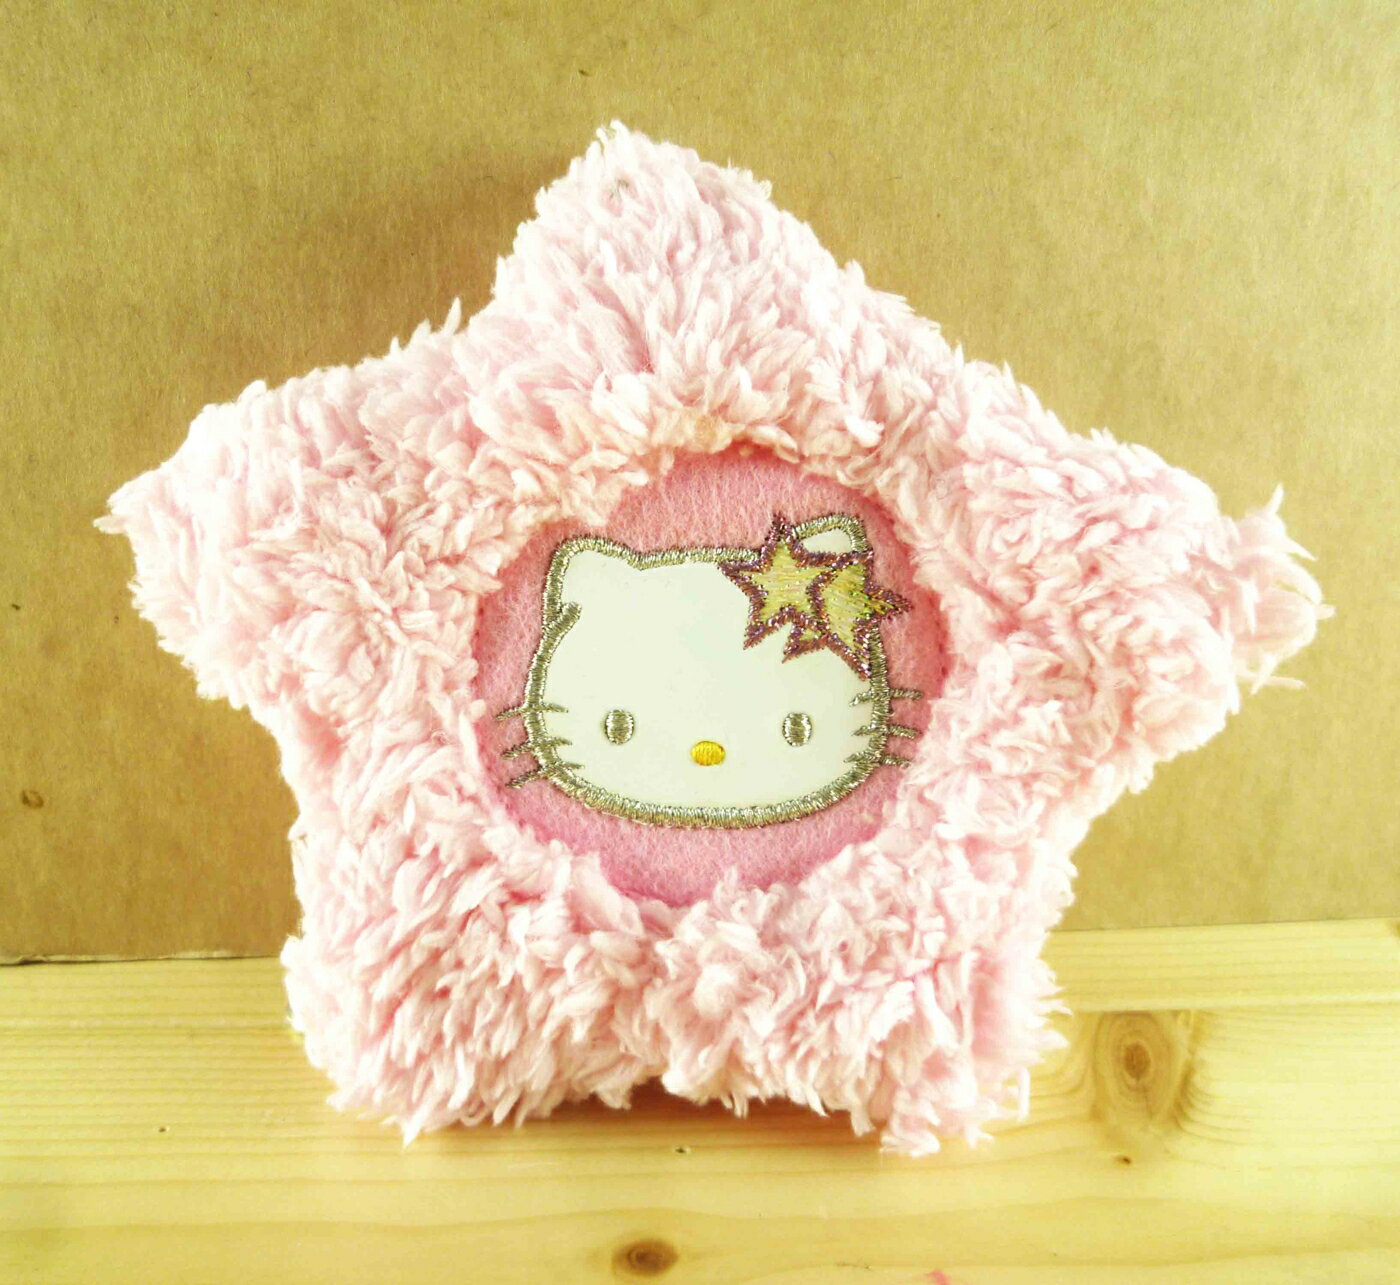 【震撼精品百貨】Hello Kitty 凱蒂貓-造型零錢包吊鍊-粉星星 震撼日式精品百貨